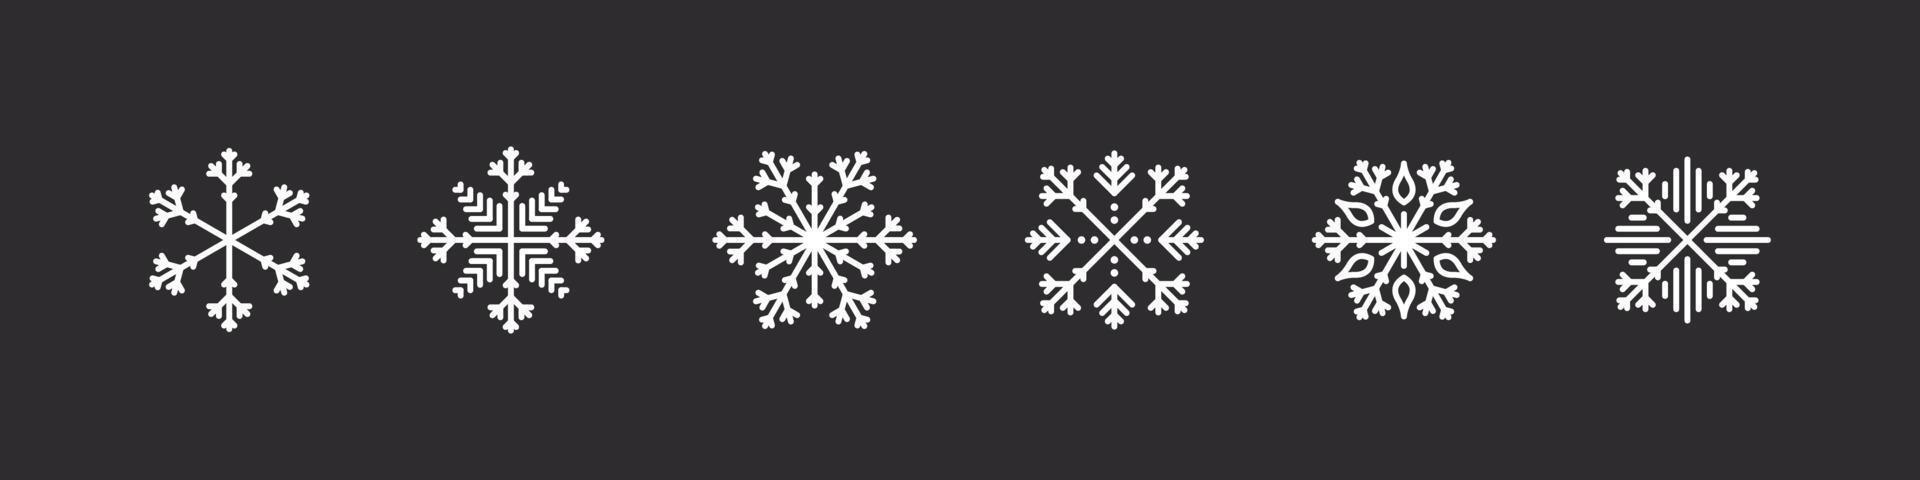 iconos de copos de nieve. copos de nieve blancos sobre un fondo oscuro. signos de navidad. colección de copos de nieve de alta calidad. ilustración vectorial vector